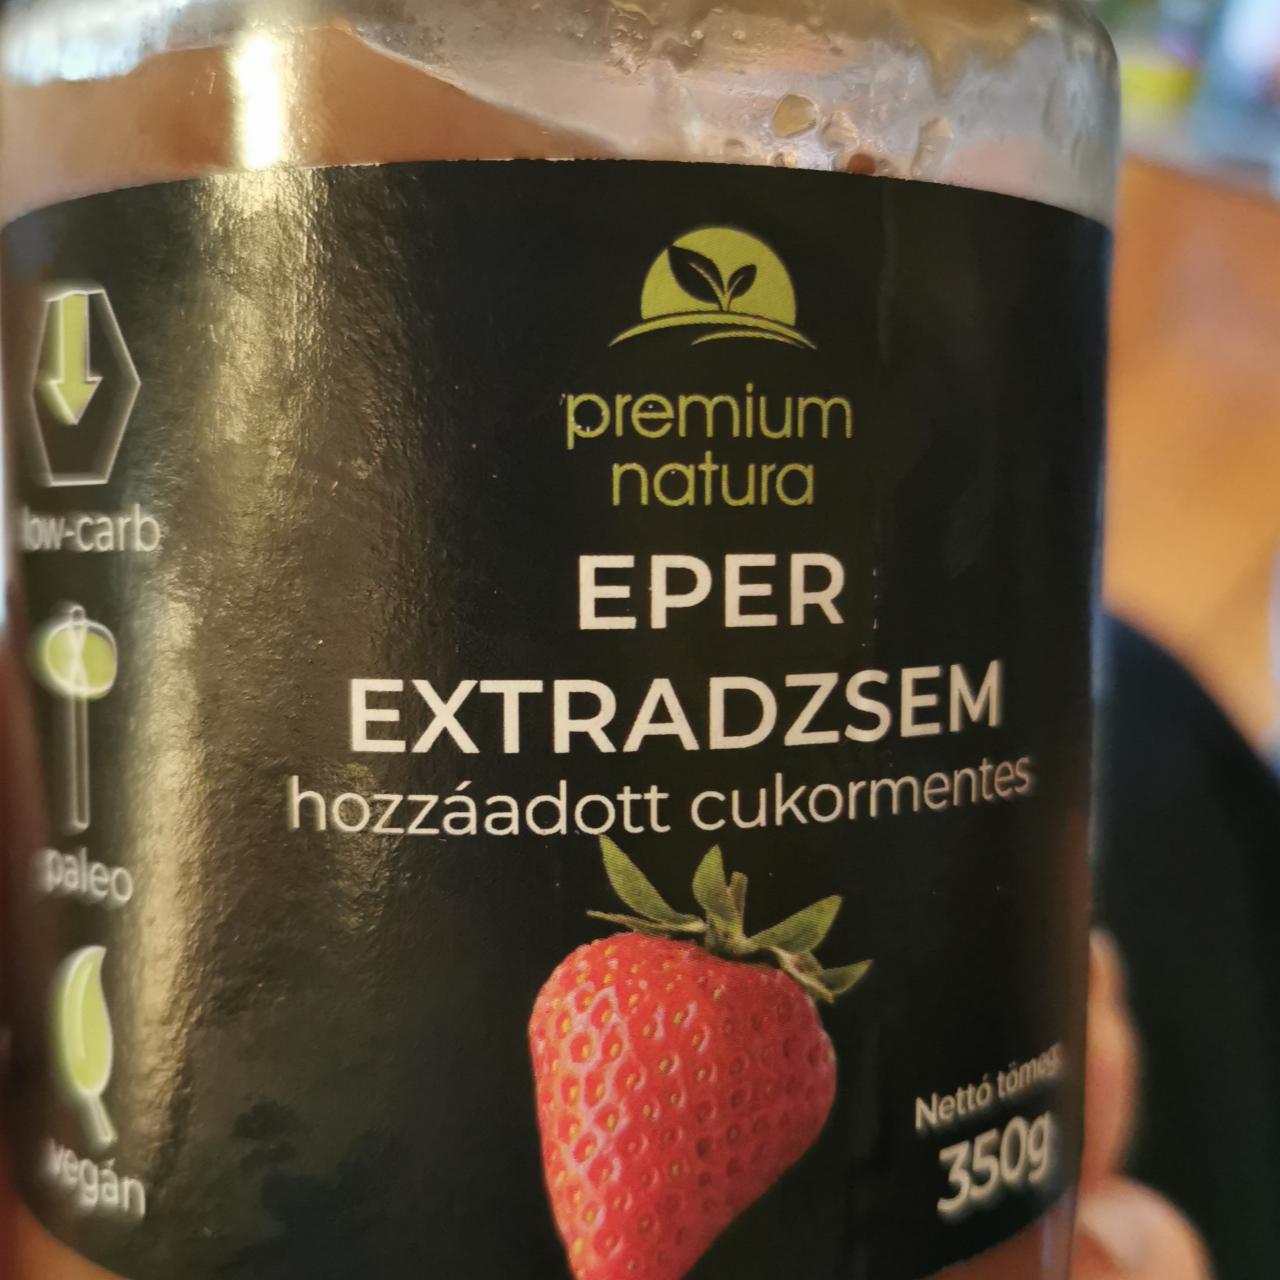 Képek - Eper extradzsem hozzáadott cukormentes Premium Natura